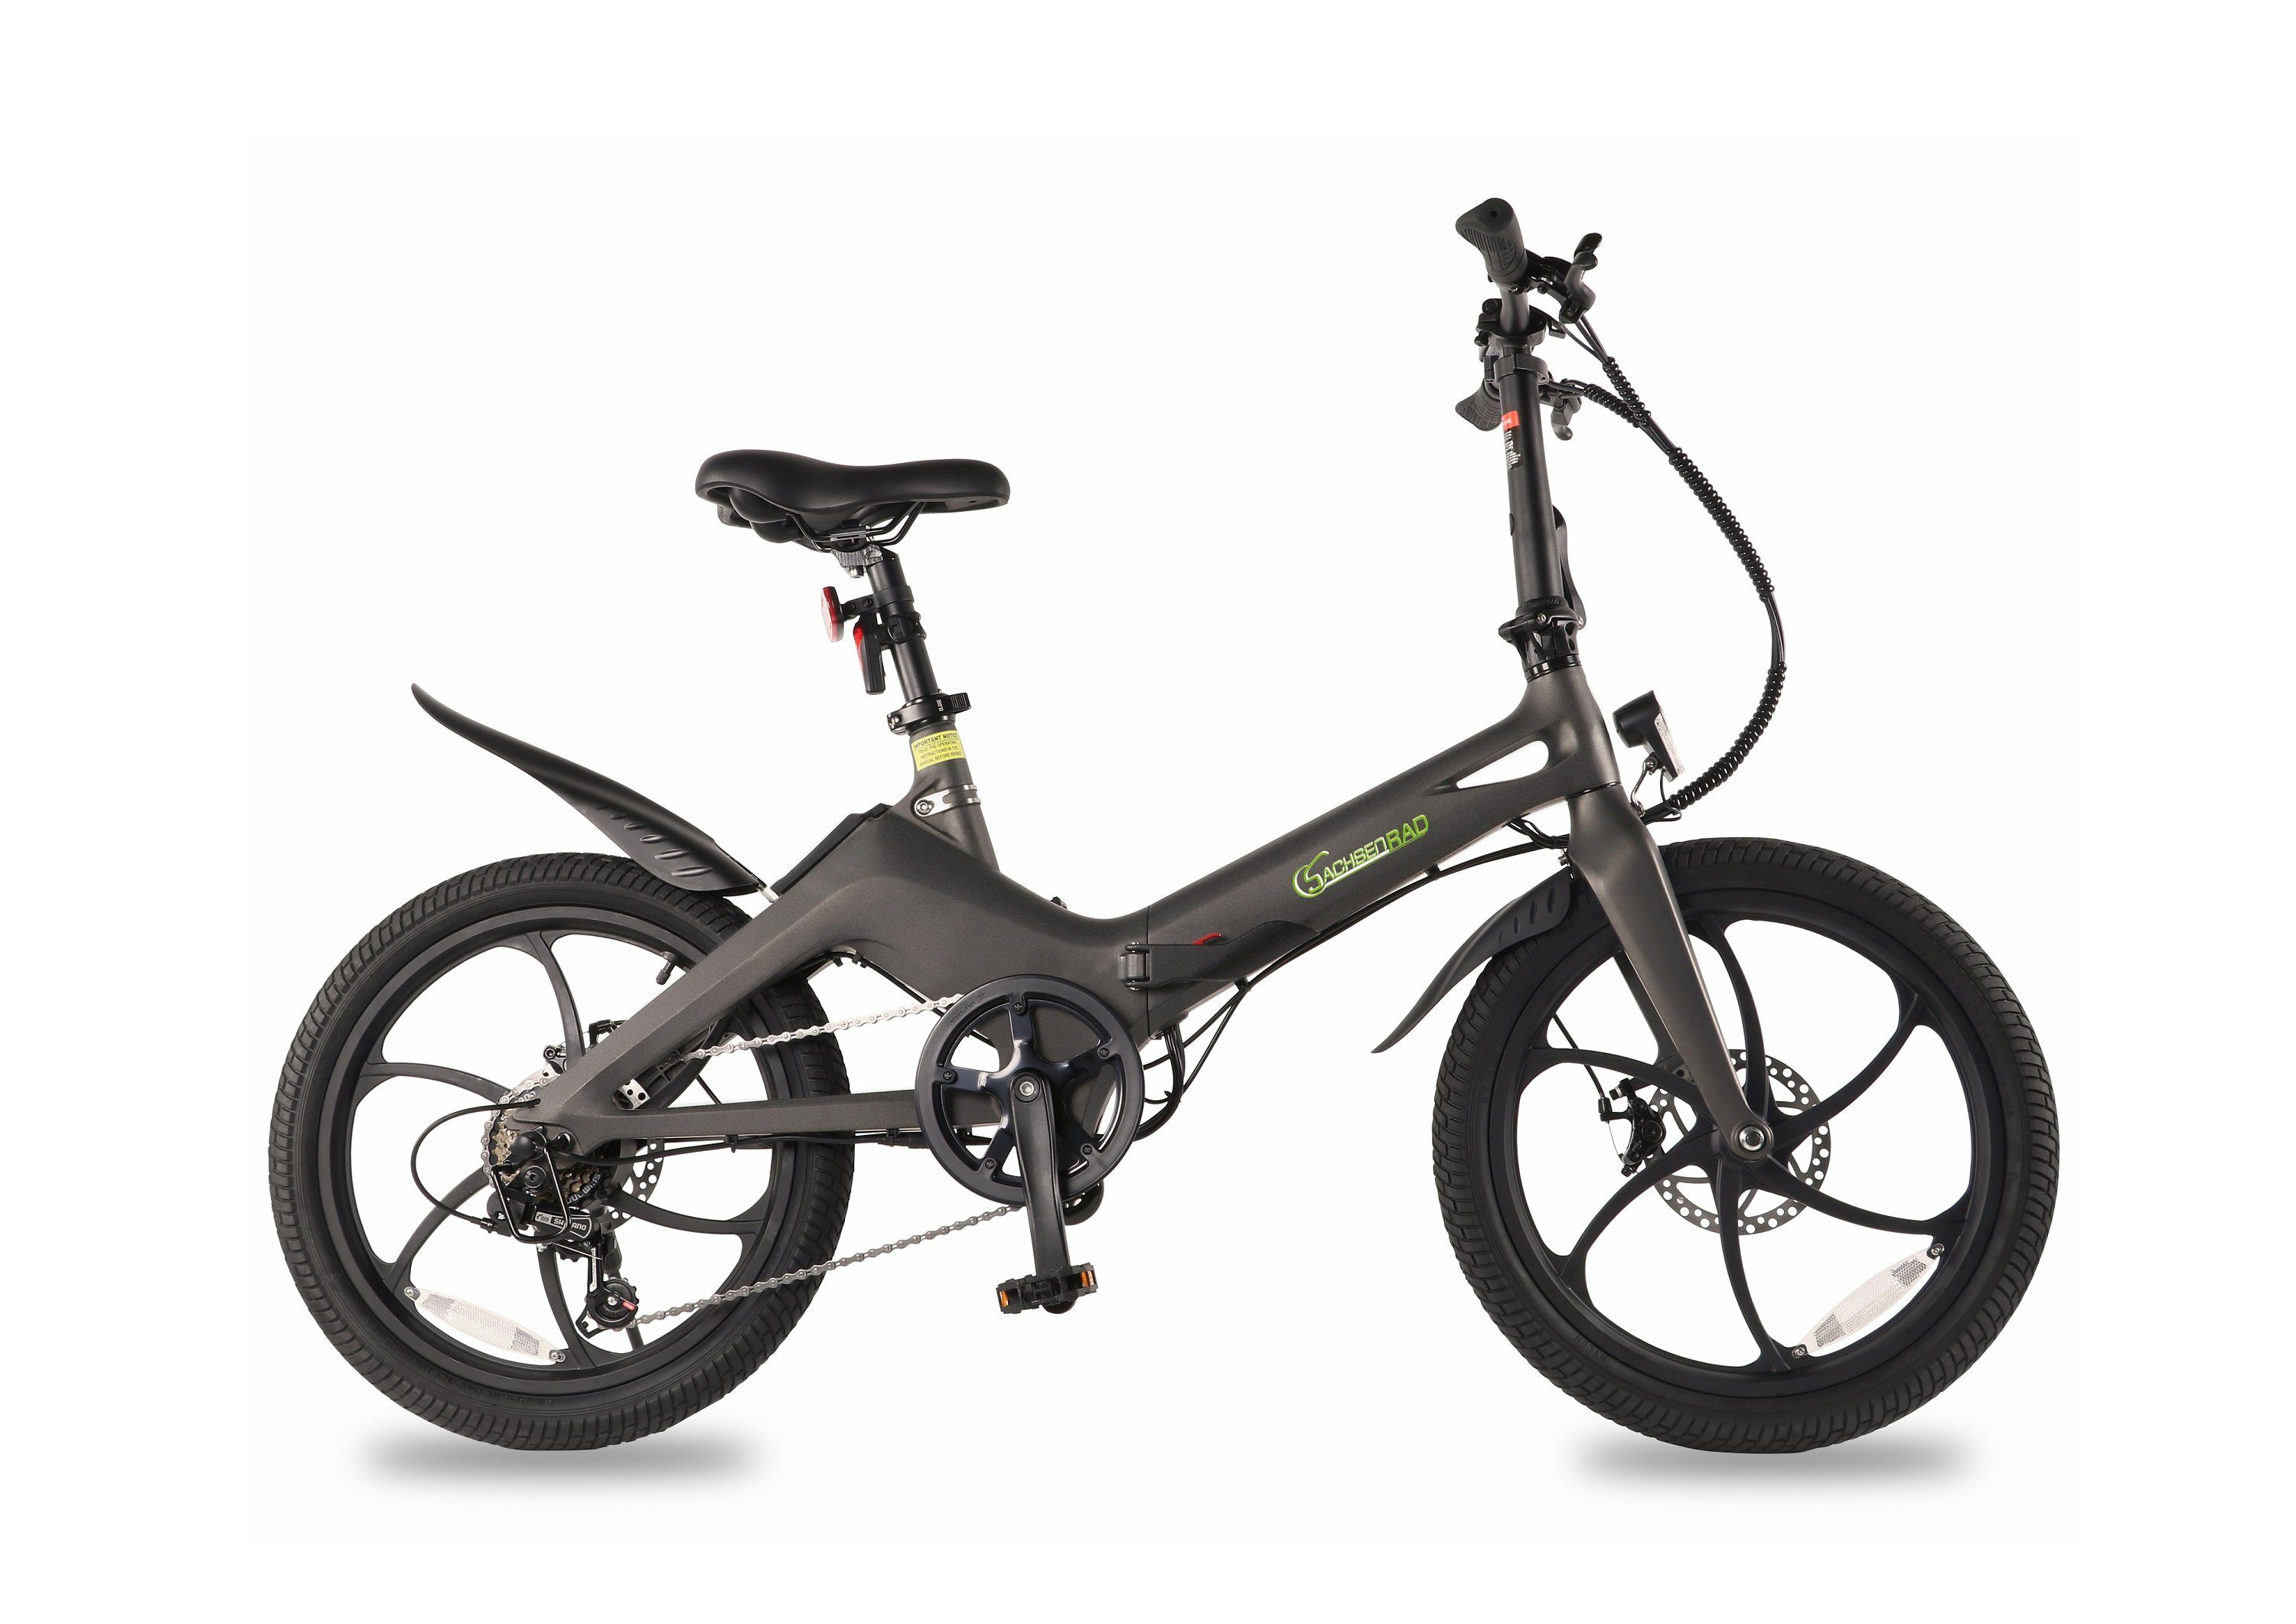 SachsenRAD E-Bike F11 MagPuma E-Faltbike 20 Zoll 80 KM Reichweite StVZO, 6 Gang Shiamo SIS Schaltwerk, Kettenschaltung, Heckmotor, (1 Stück), inkl.Transporttasche, drittes Rad für leichten Transport